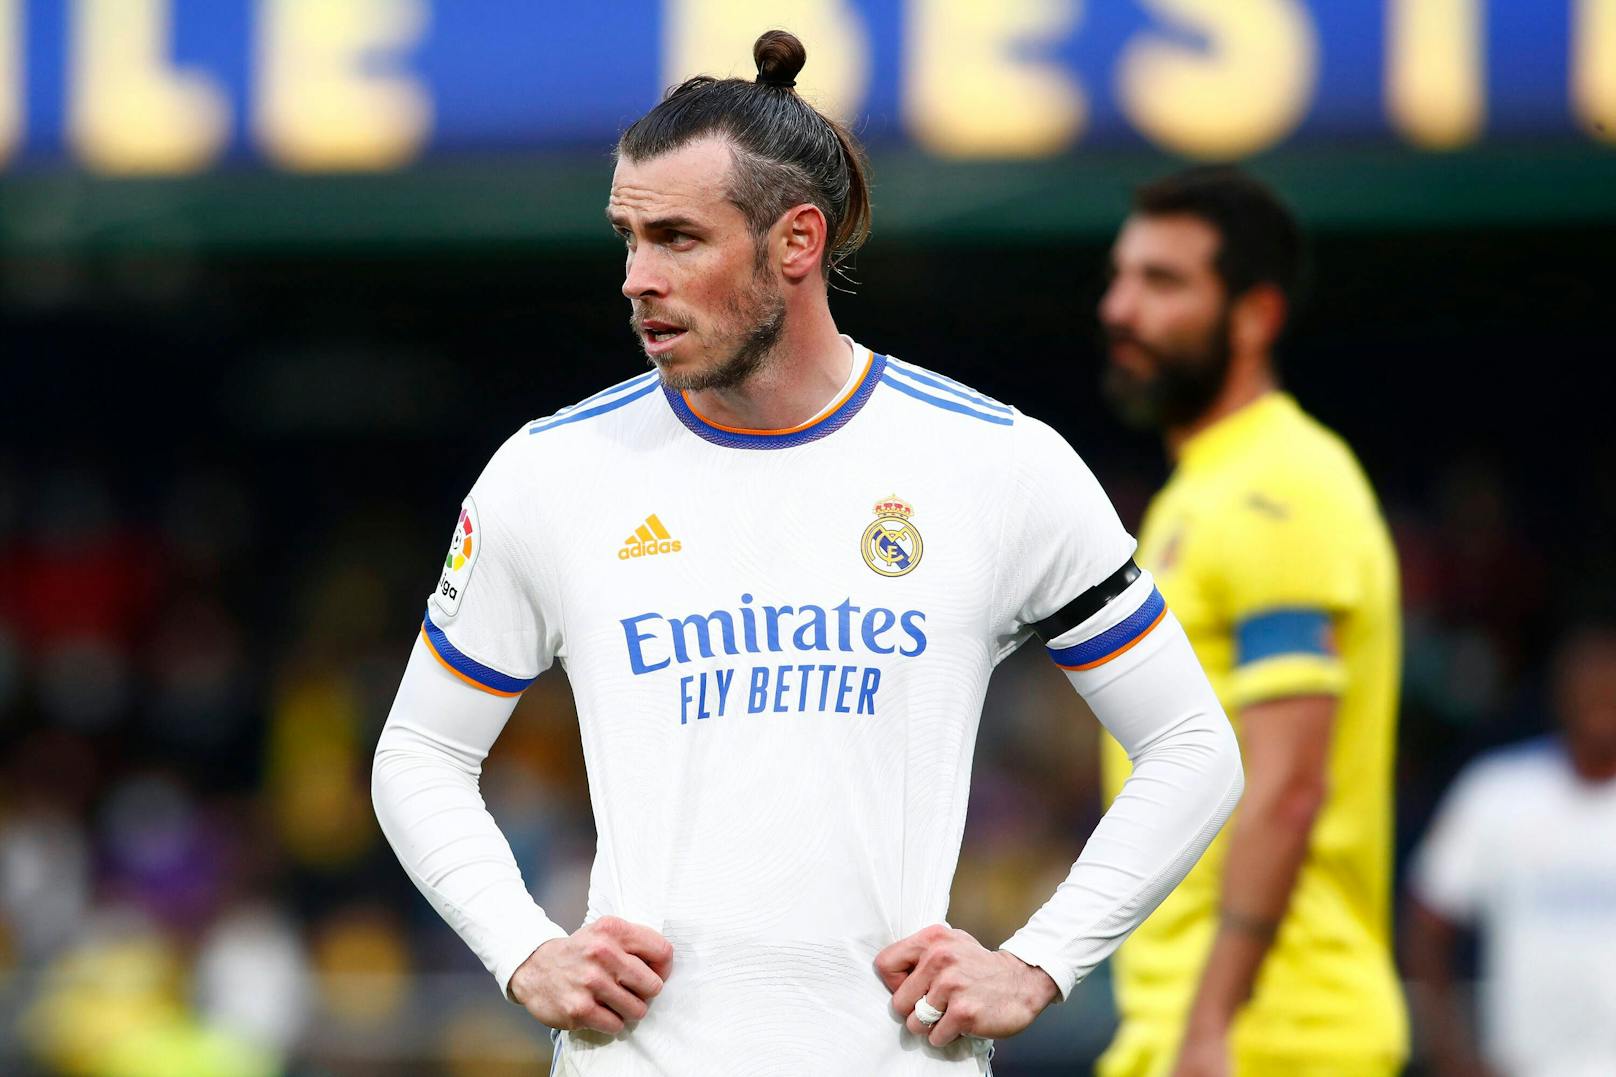 Coach bestätigt: Star-Kicker Bale muss Real verlassen